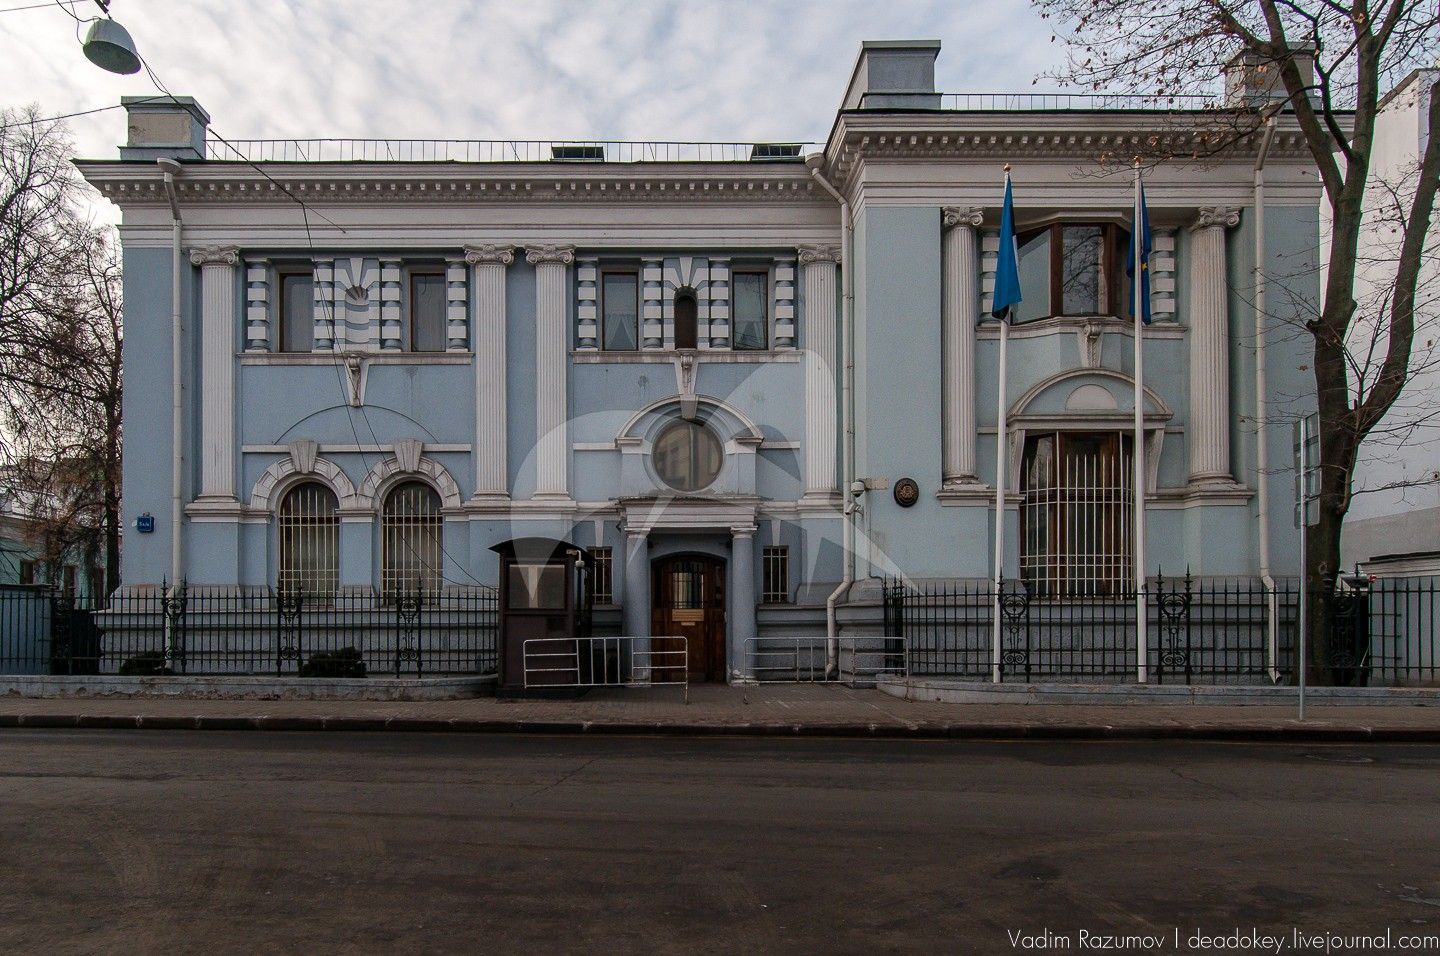 Главный дом с палатами, начало XVIII в., 1716 г., 1894 г., архитектор П.М. Самарин. Здесь в 1763 г. родился президент Академии художеств А.Н. Оленин